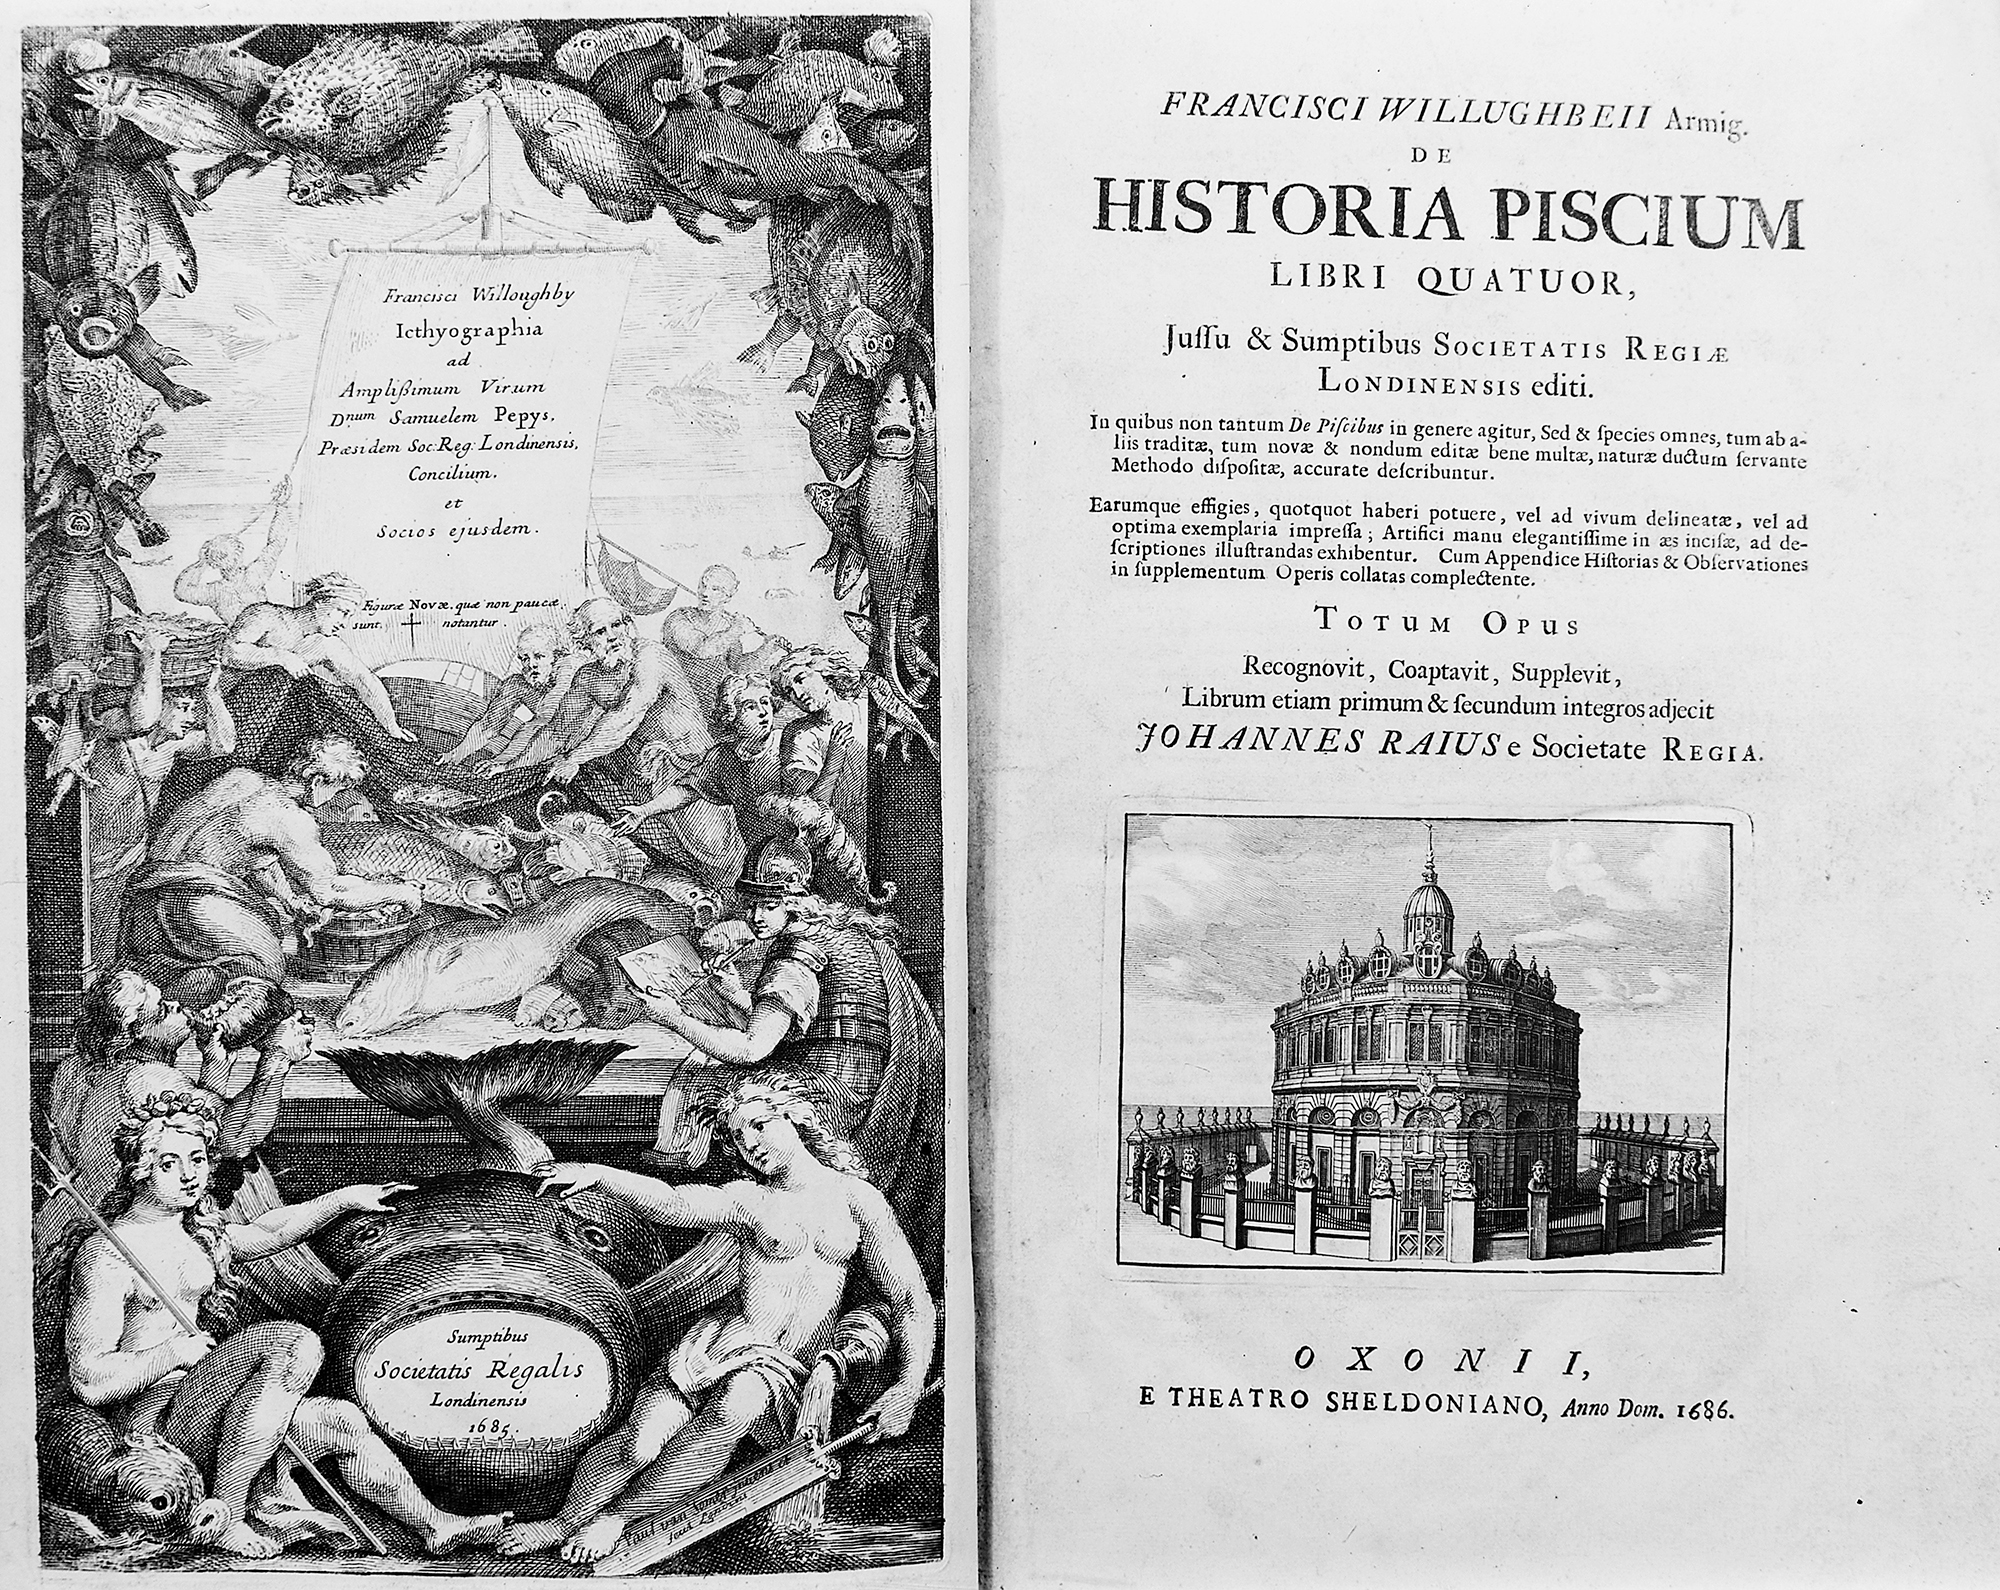 De Historia Piscium, Francis Willughby